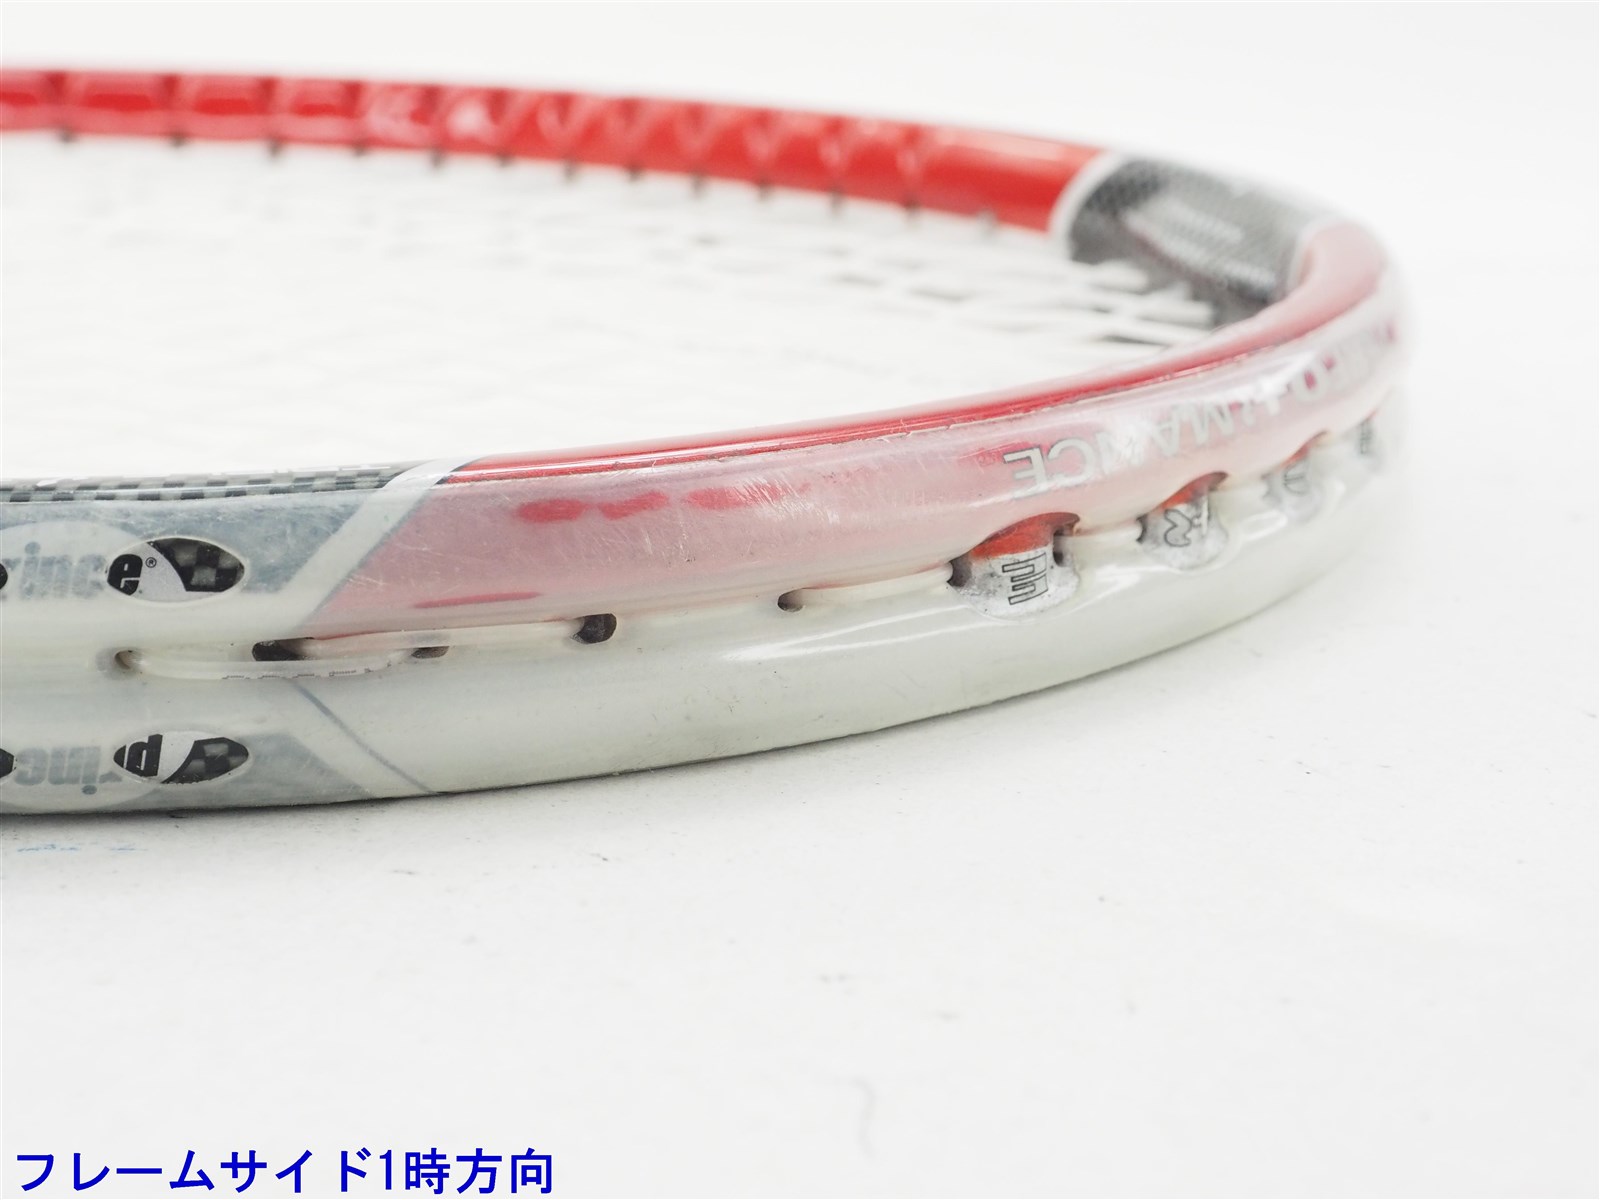 テニスラケット プリンス モア アタック S OS 2003年モデル (G3)PRINCE